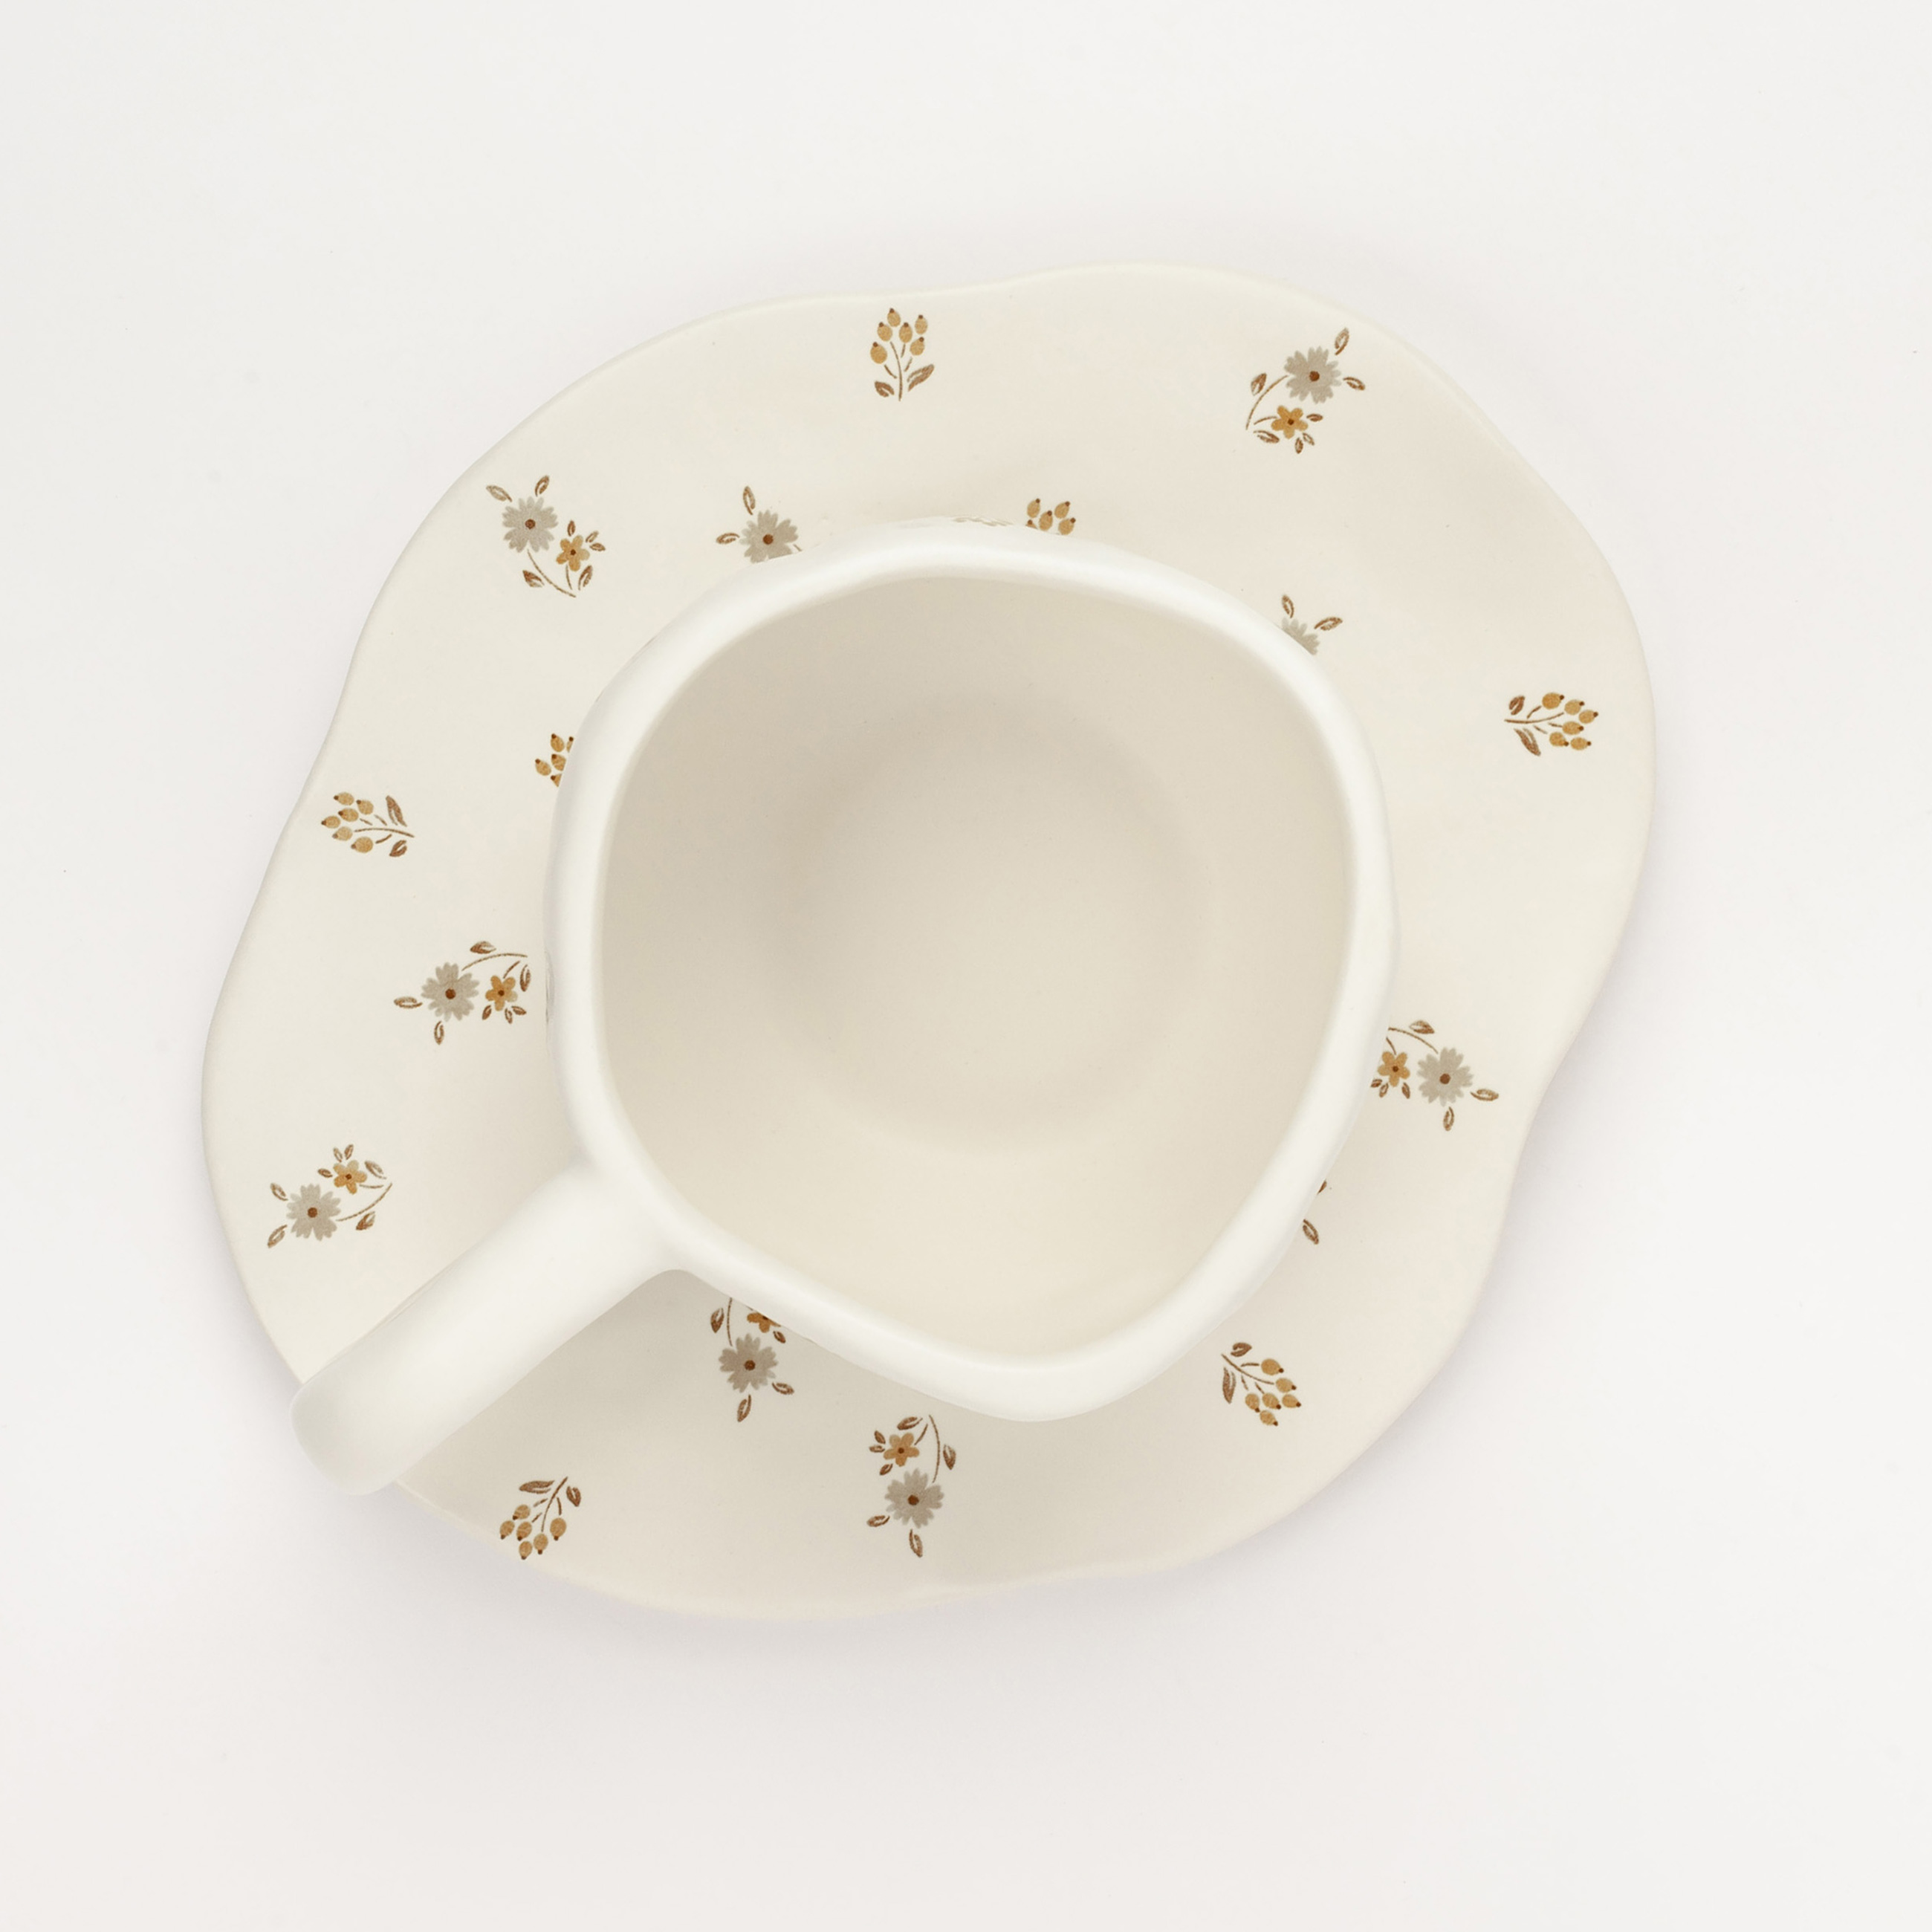 Пара чайная, 1 перс, 2 пр, 360 мл, керамика, молочная, Винтажные цветы, La flore изображение № 4